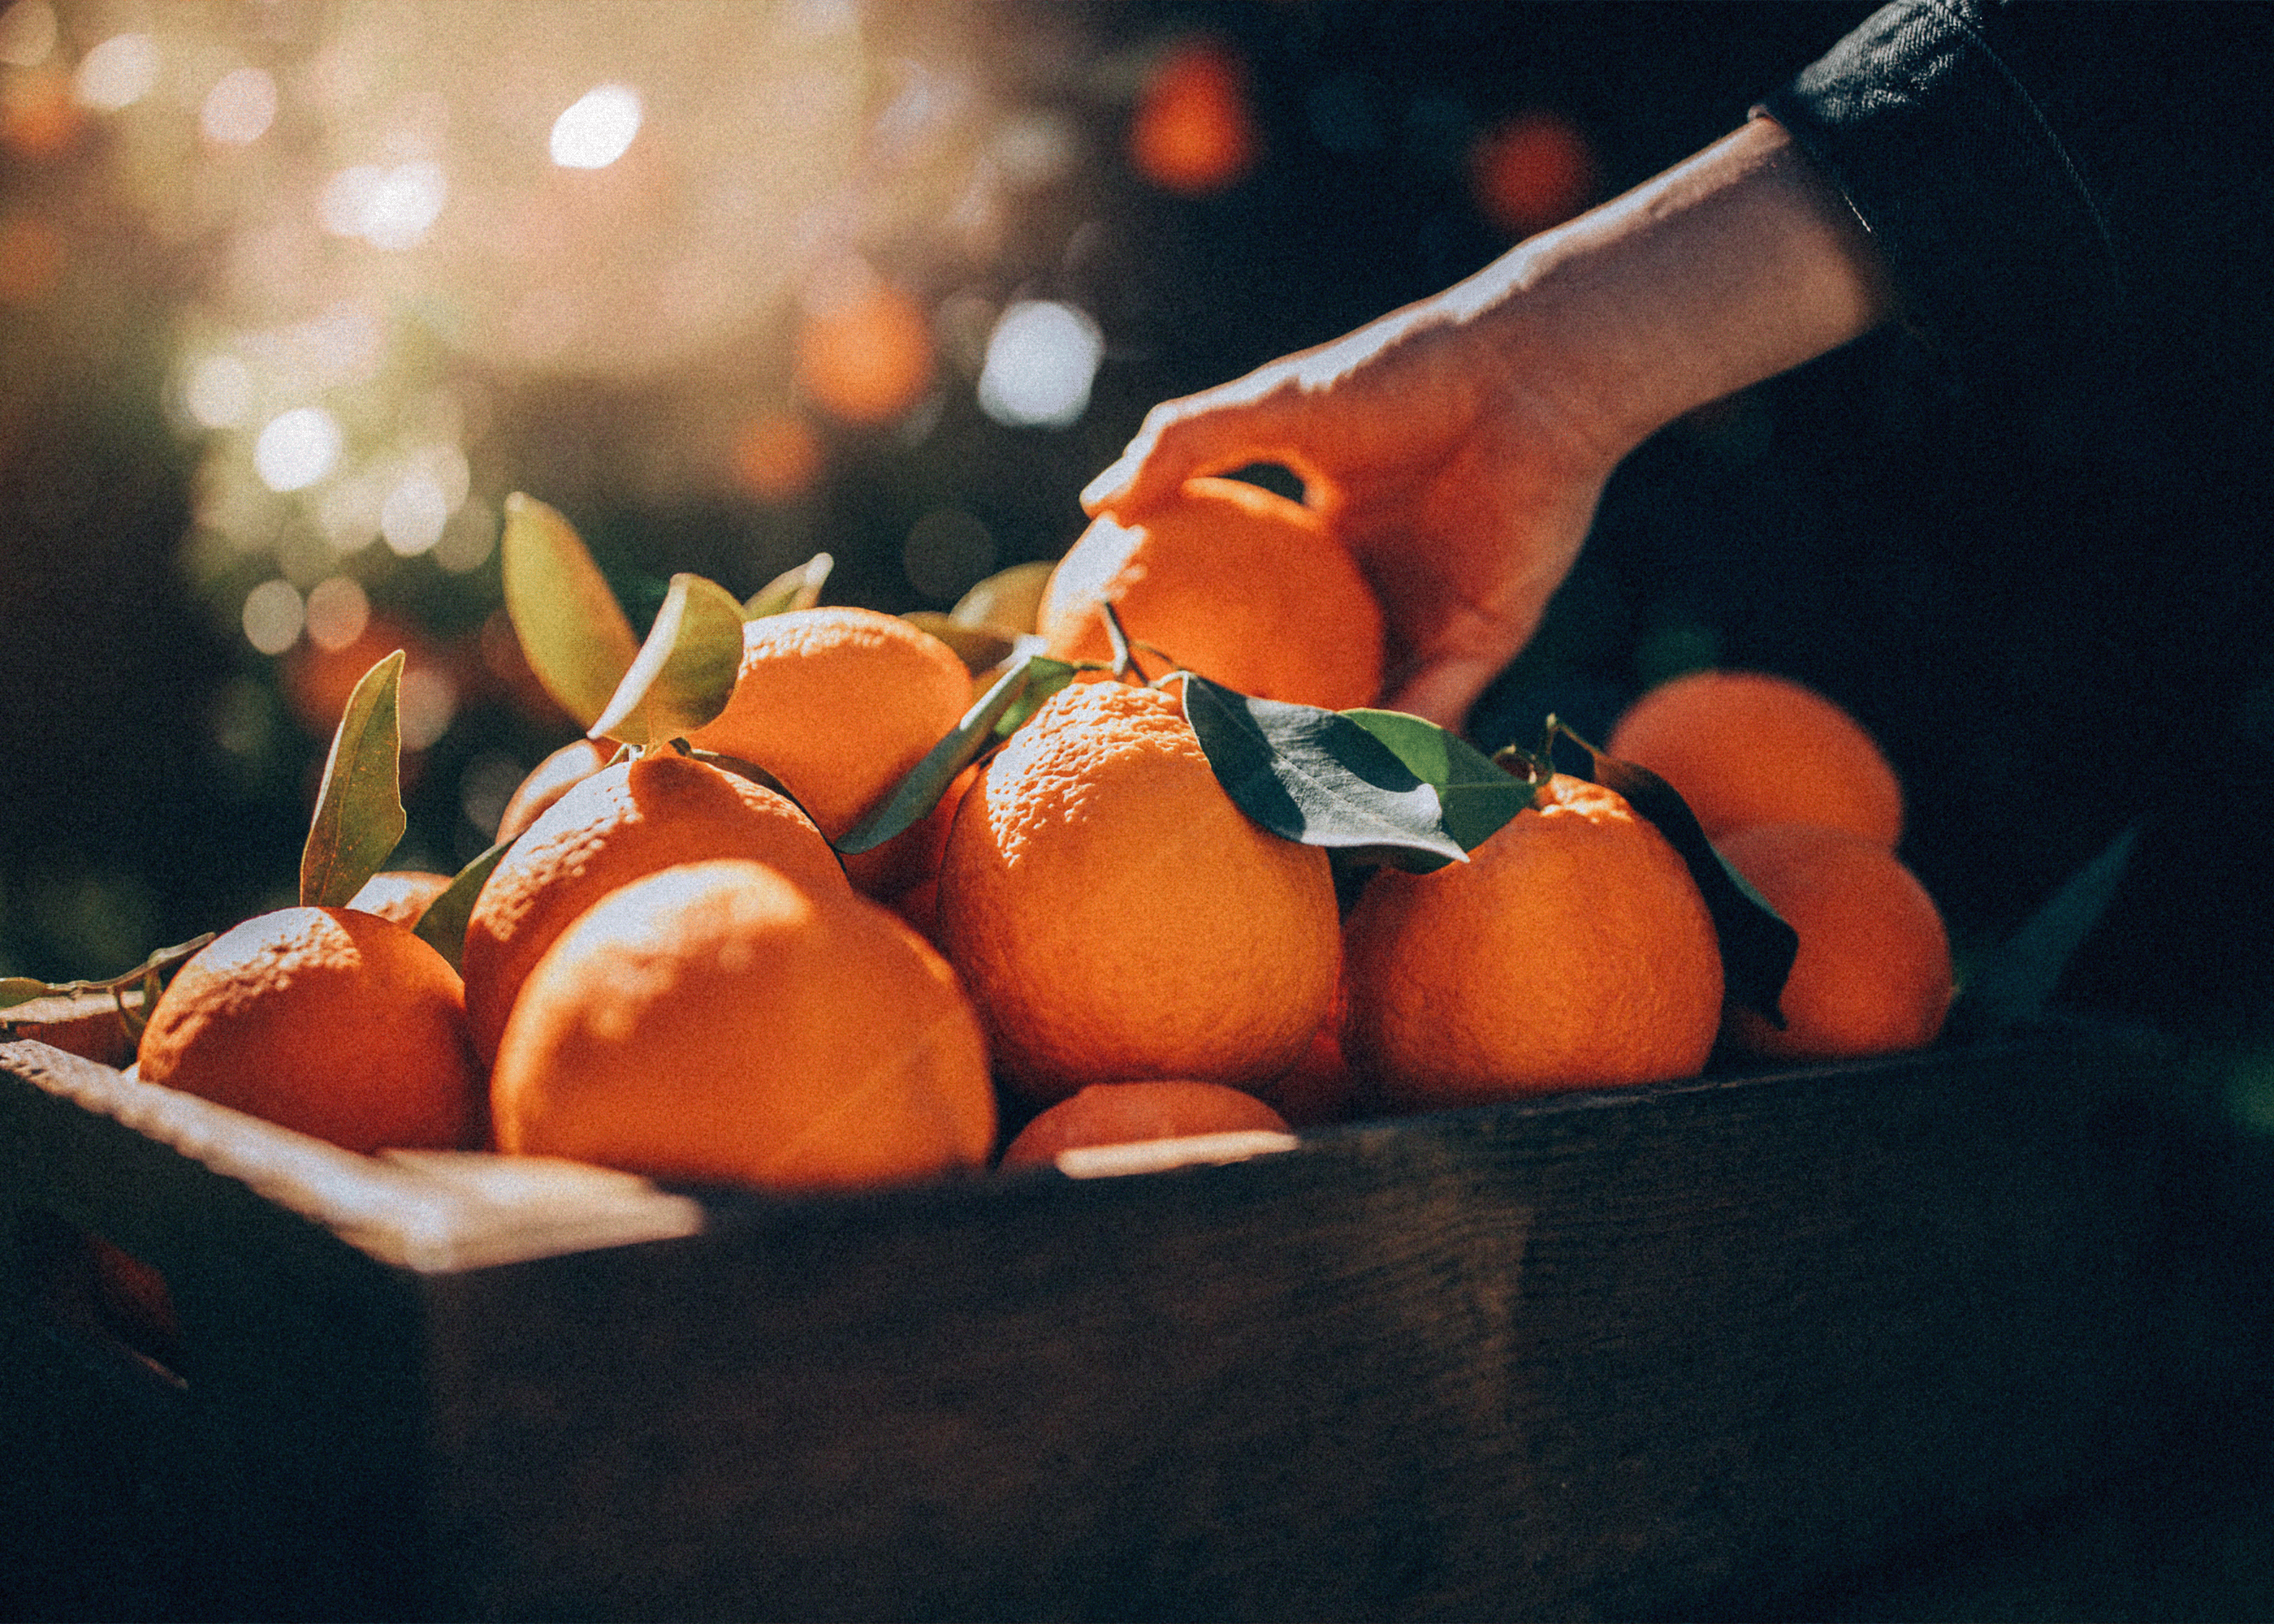 Реклама мандаринов. Мандарины. Девушка с мандаринами. Оранжевый мандарин. Апельсин и мандарин.